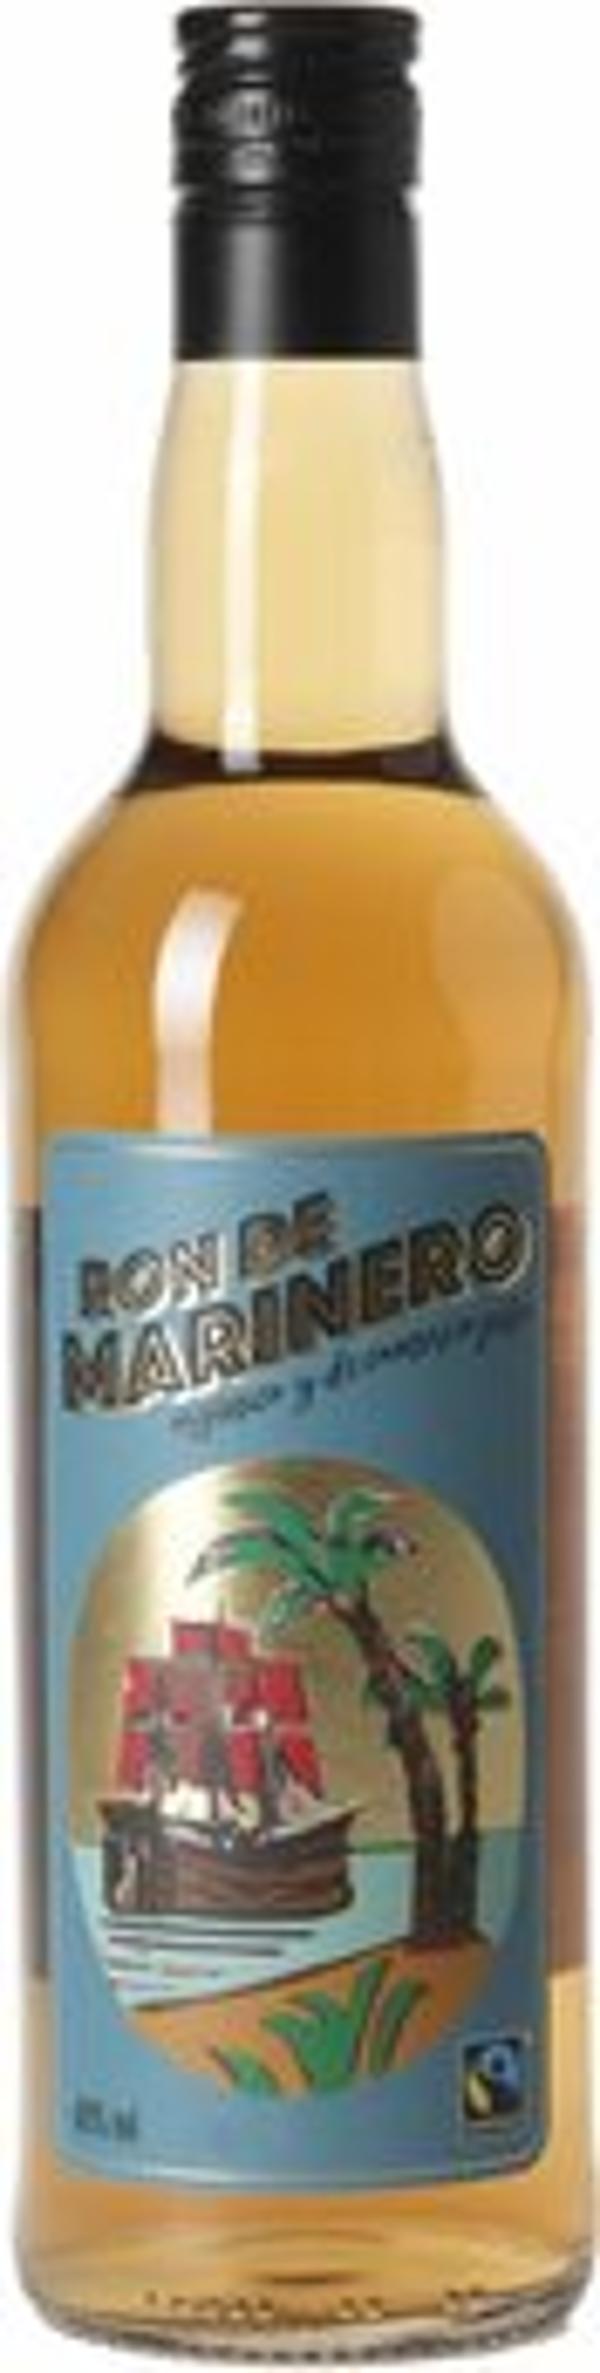 Produktfoto zu Ron de Marinero Bio Fair Trade